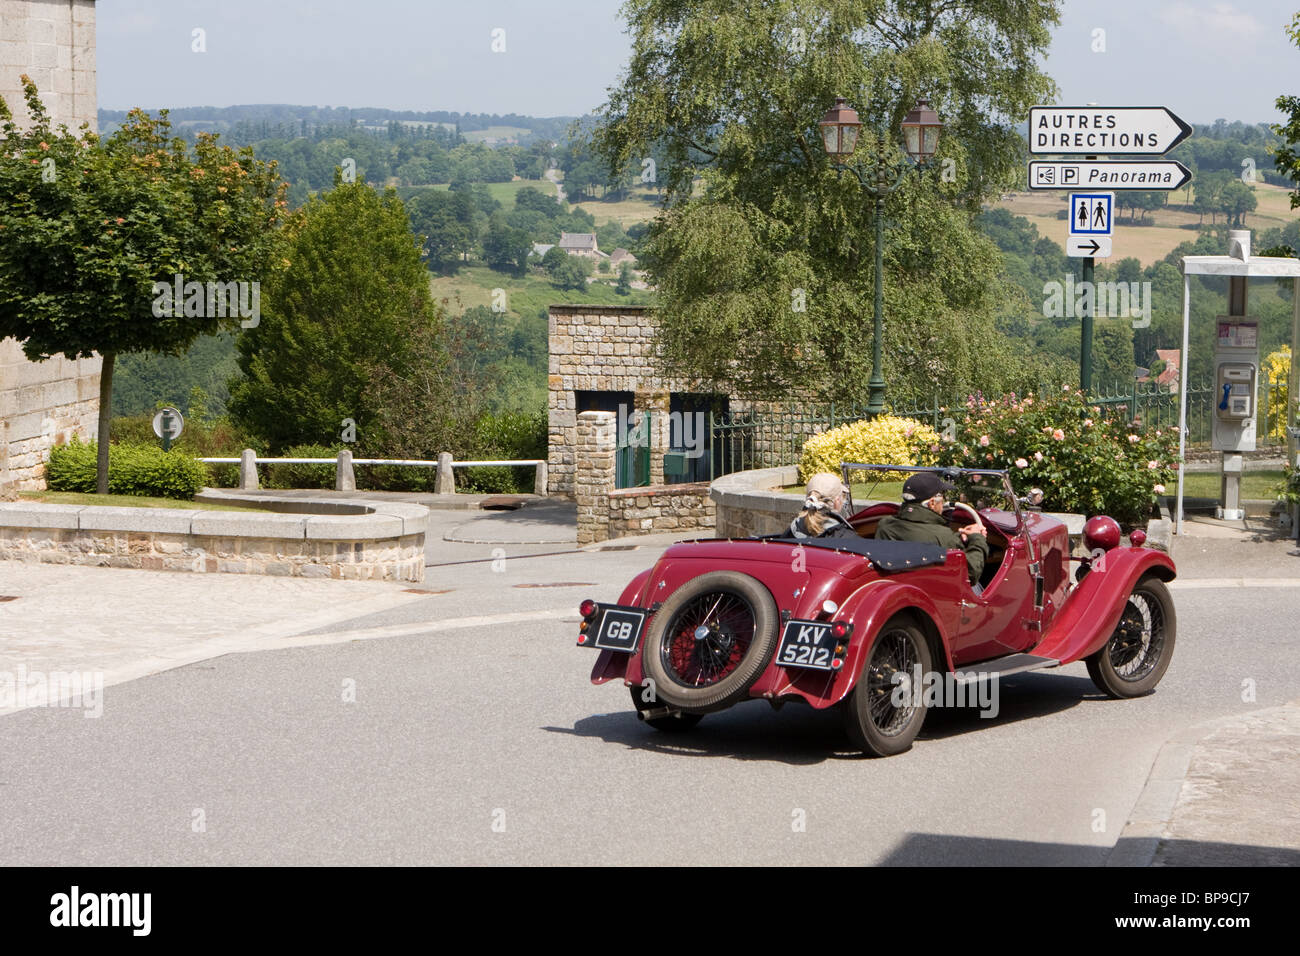 Classic British Riley motor car guida attraverso la città di Domfront in Francia con la parte superiore verso il basso Foto Stock